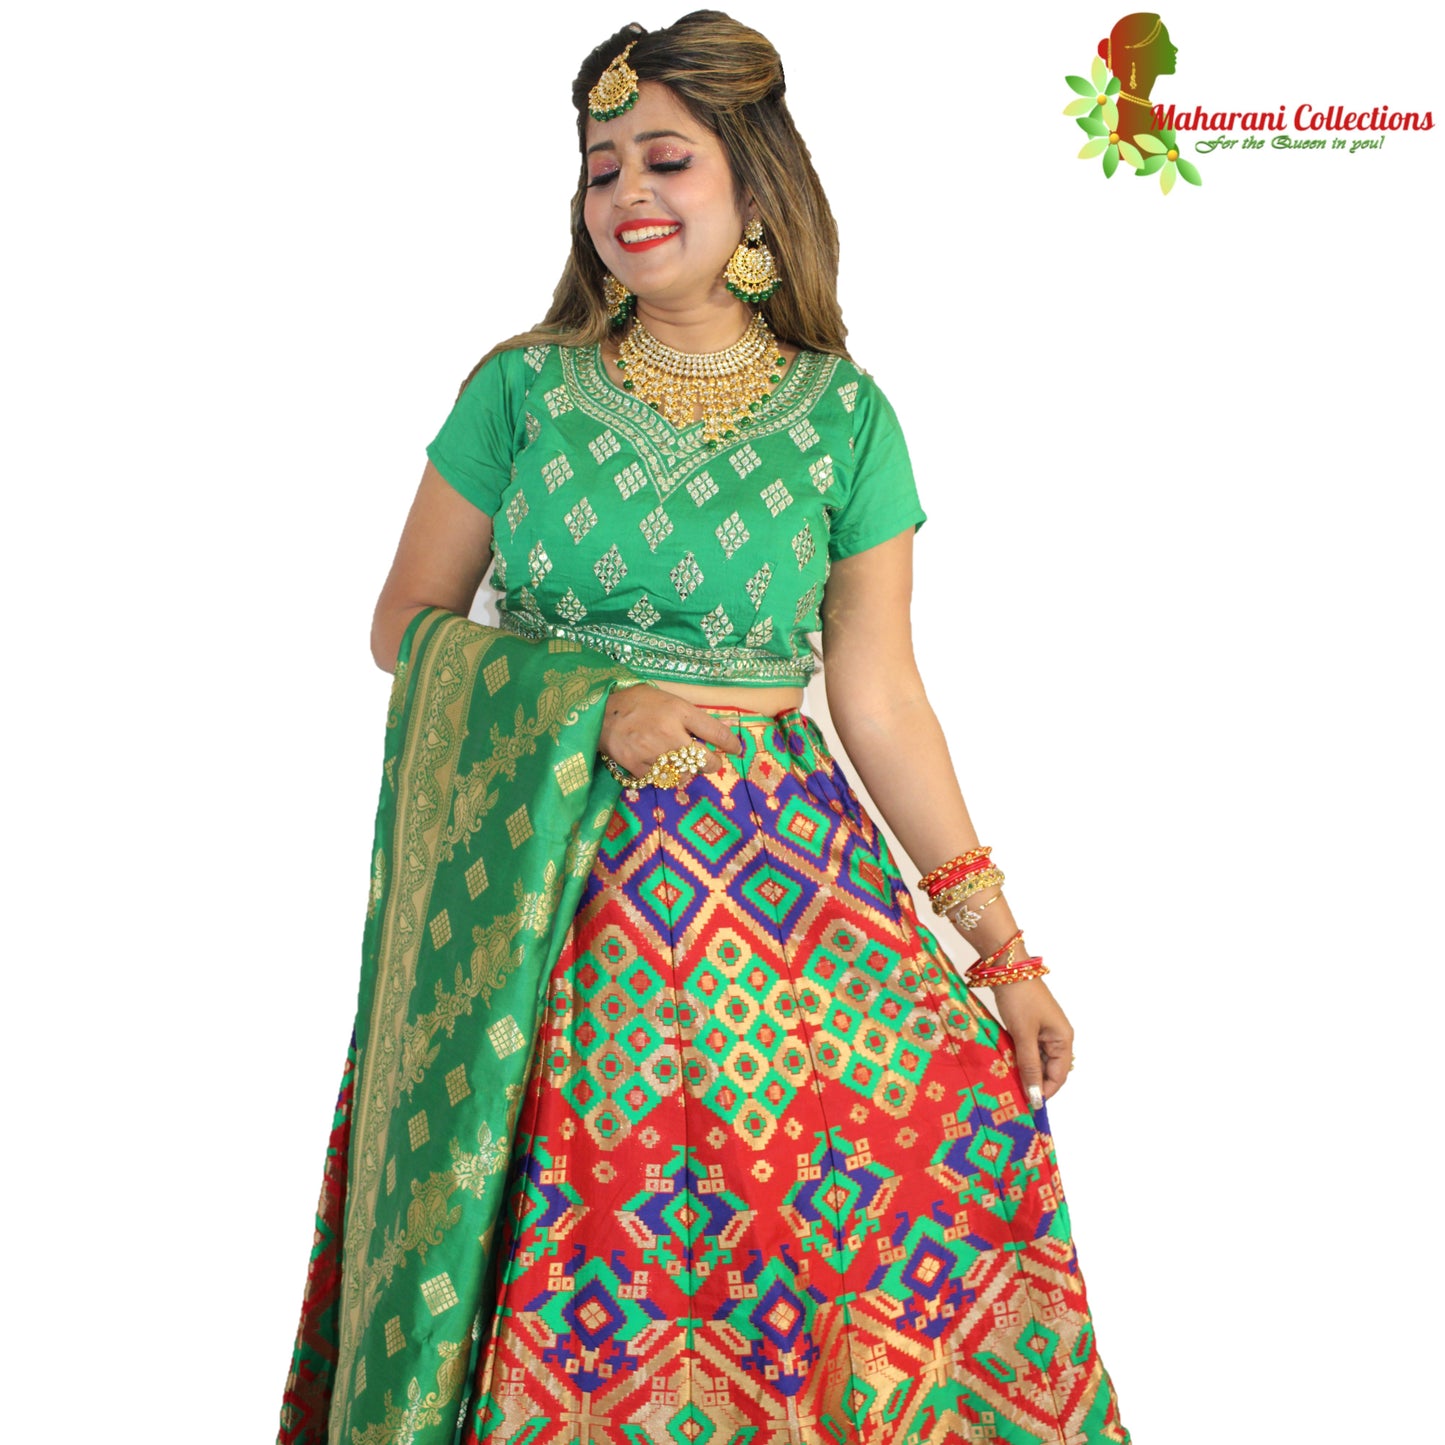 Maharani's Designer Pure Banarasi Silk Lehenga - Green and Red (M/L)